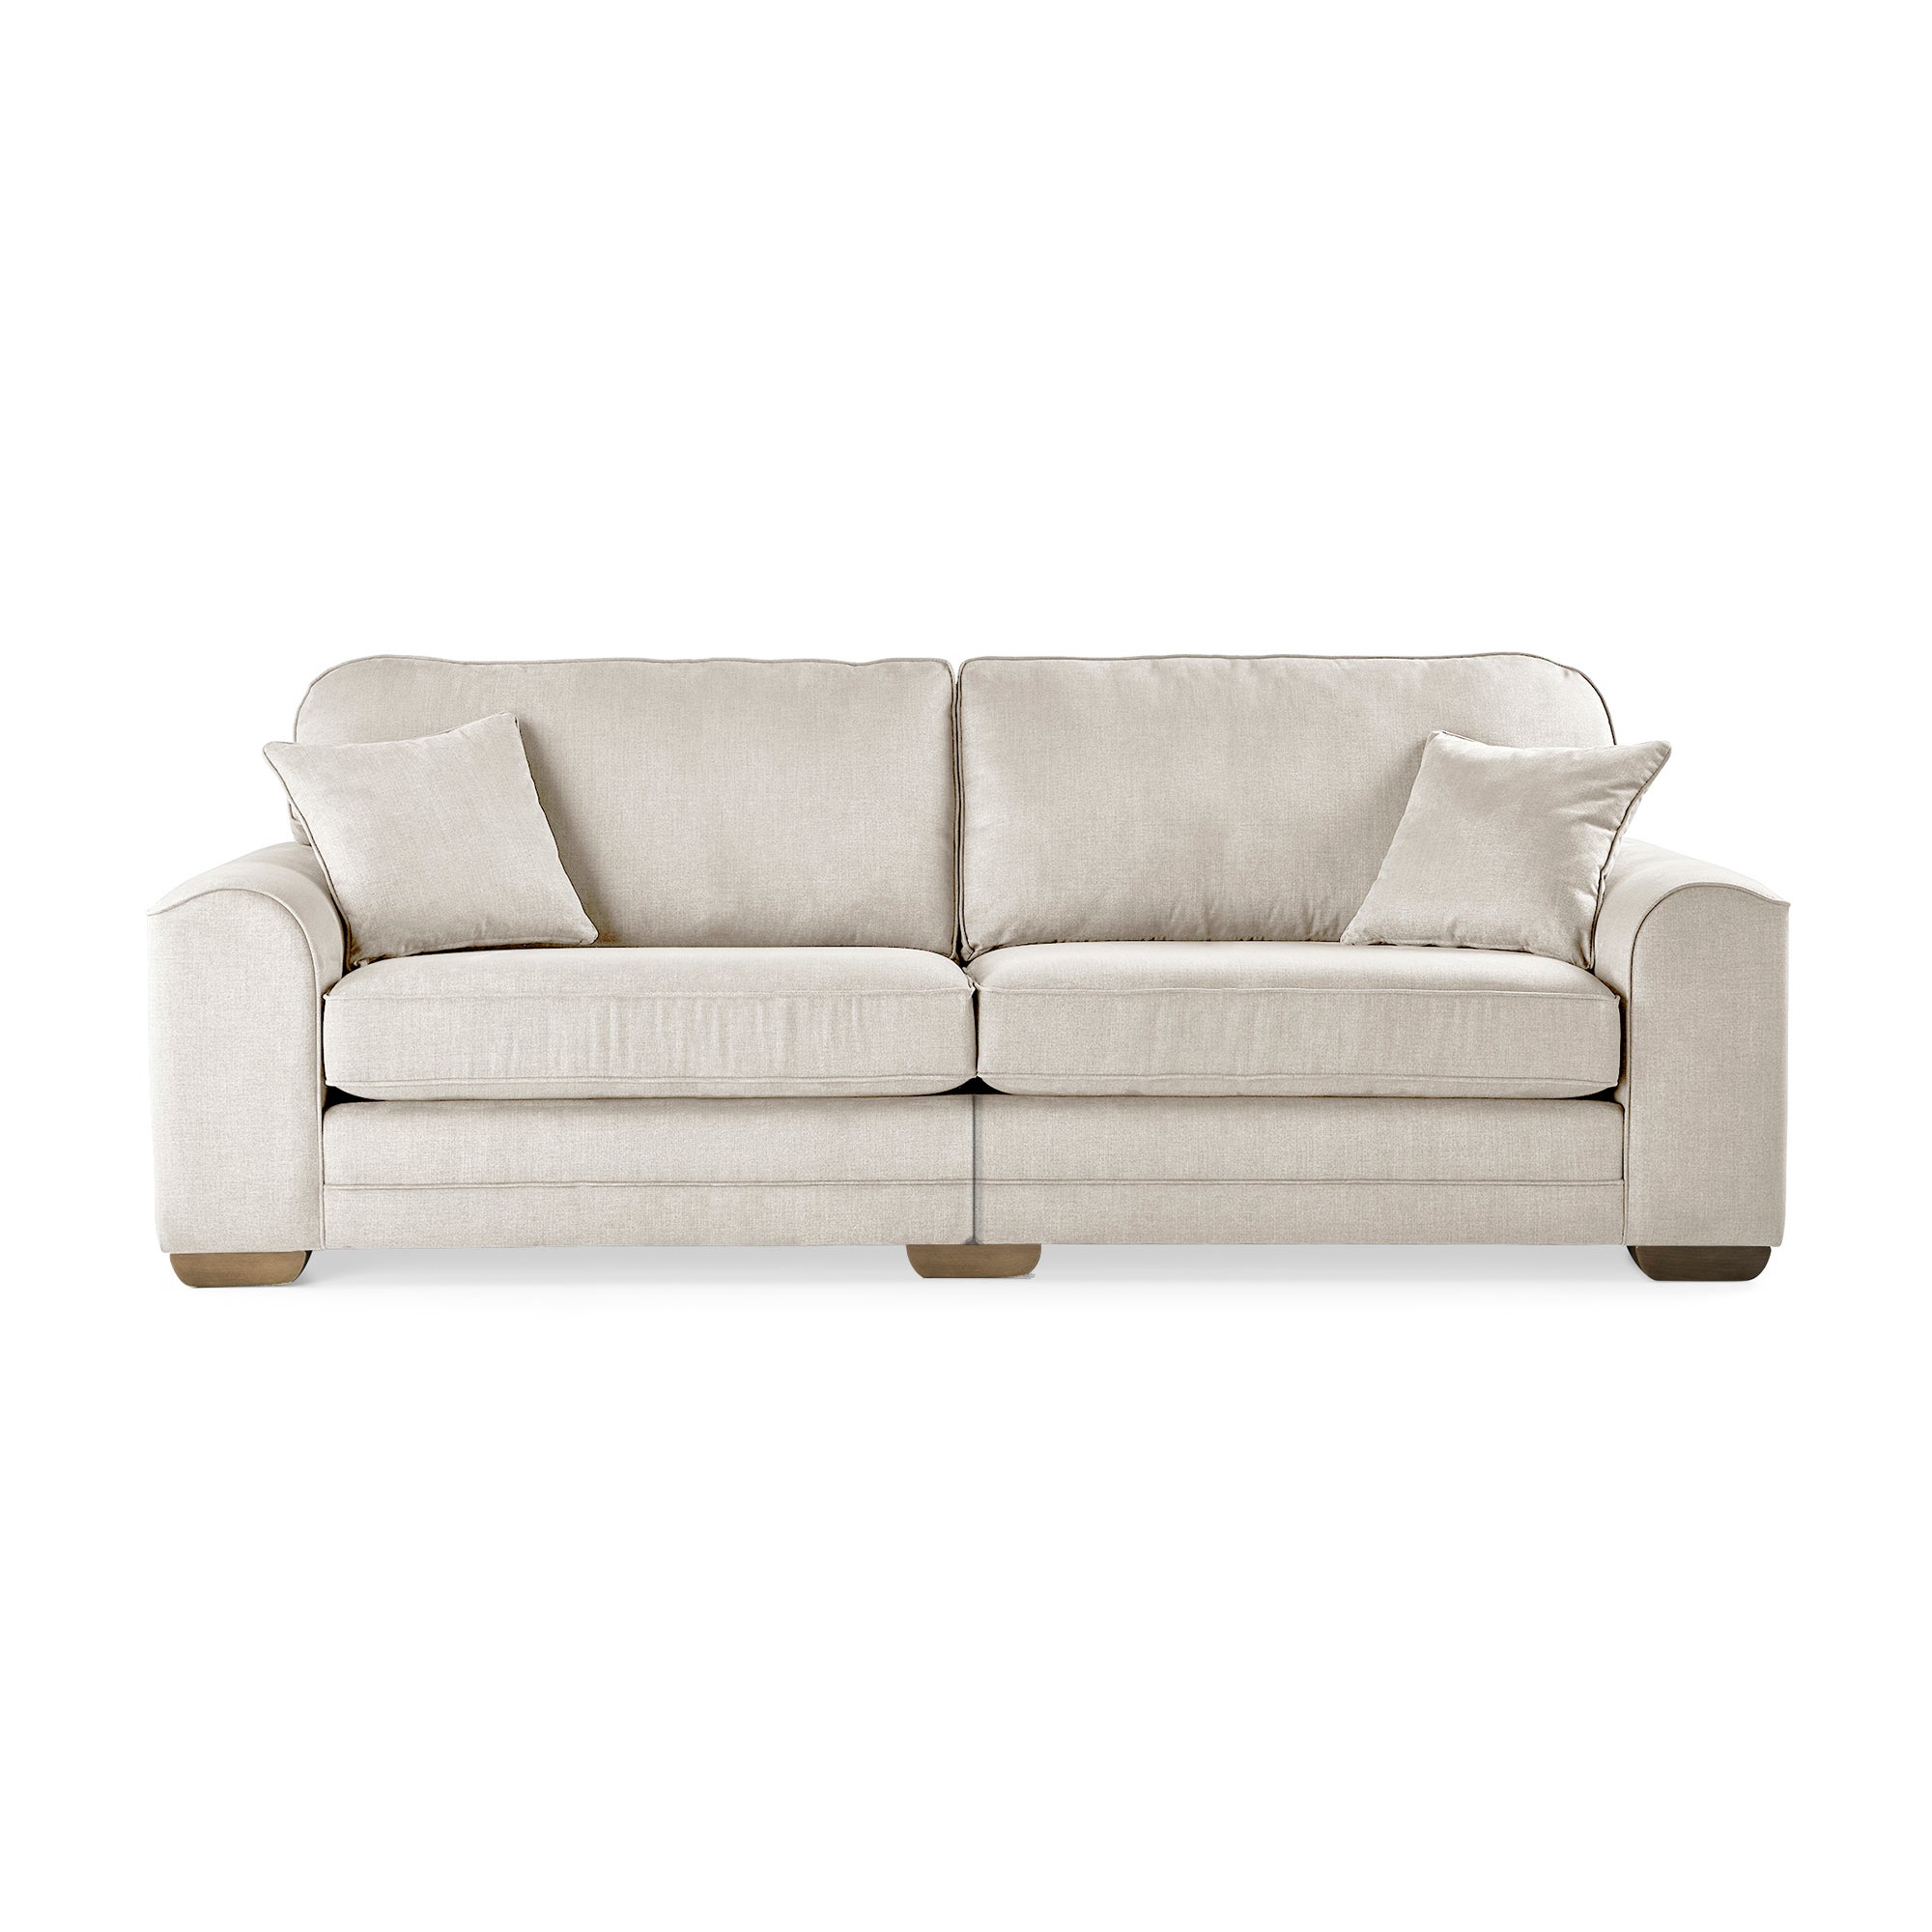 Morello 4 Seater Sofa White